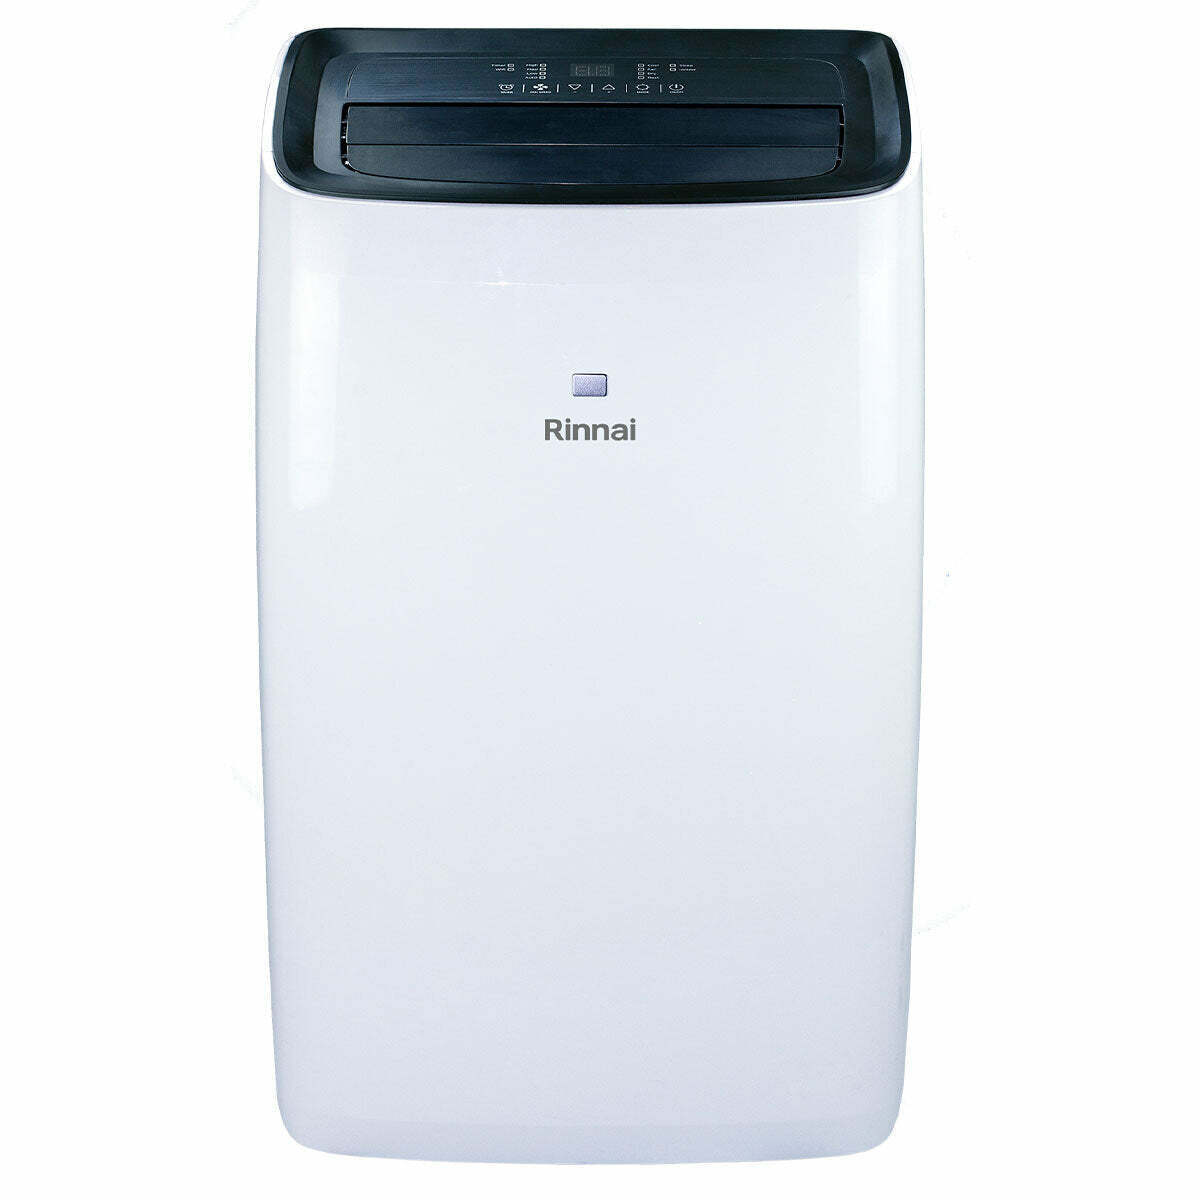 Rinnai C4 Portable Air Conditioner_1